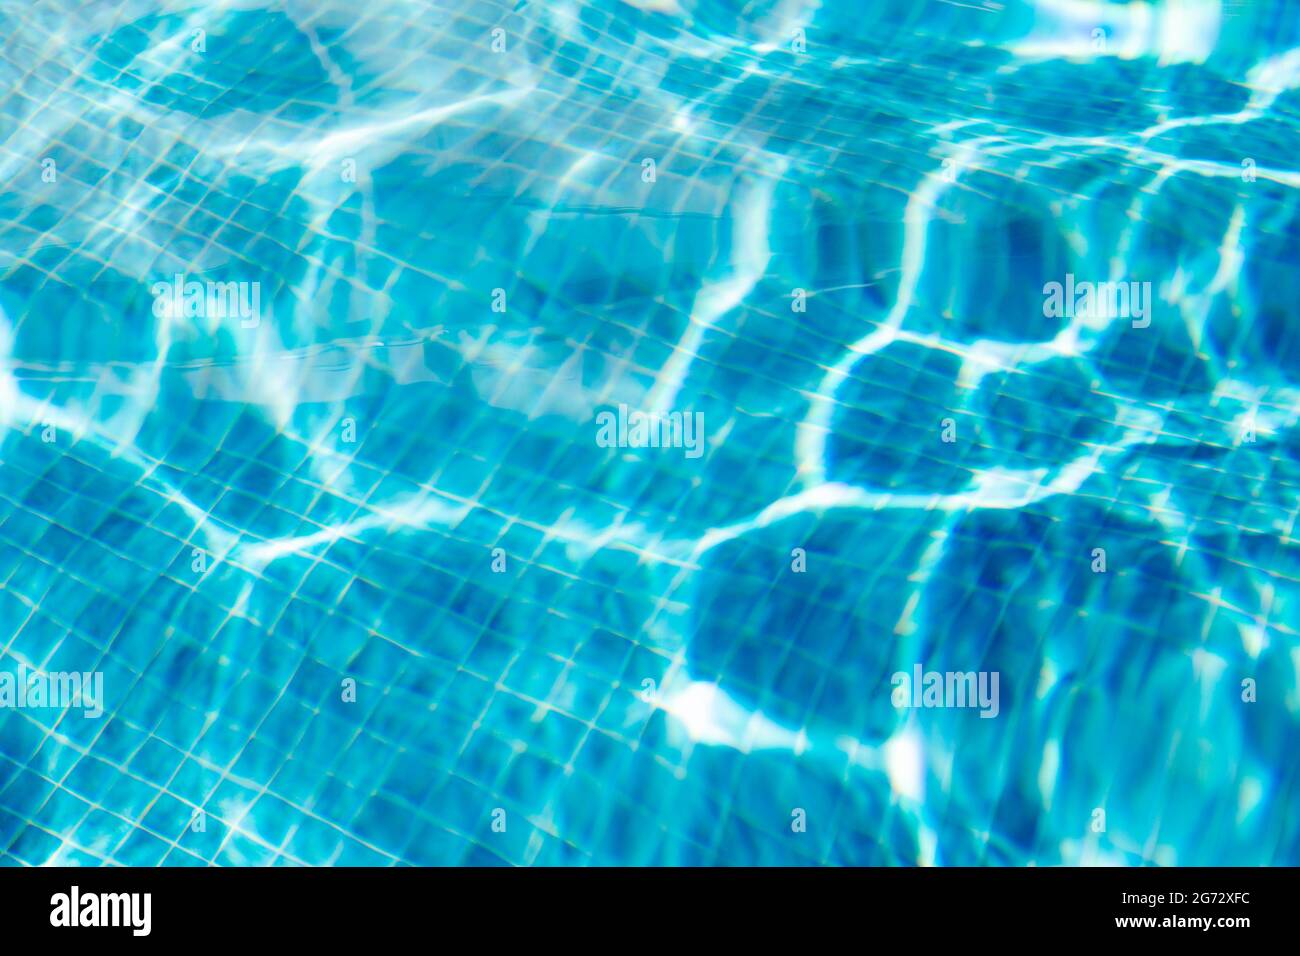 Piso de una piscina que refleja rayos de sol en azulejos cuadrados azules. Foto de stock